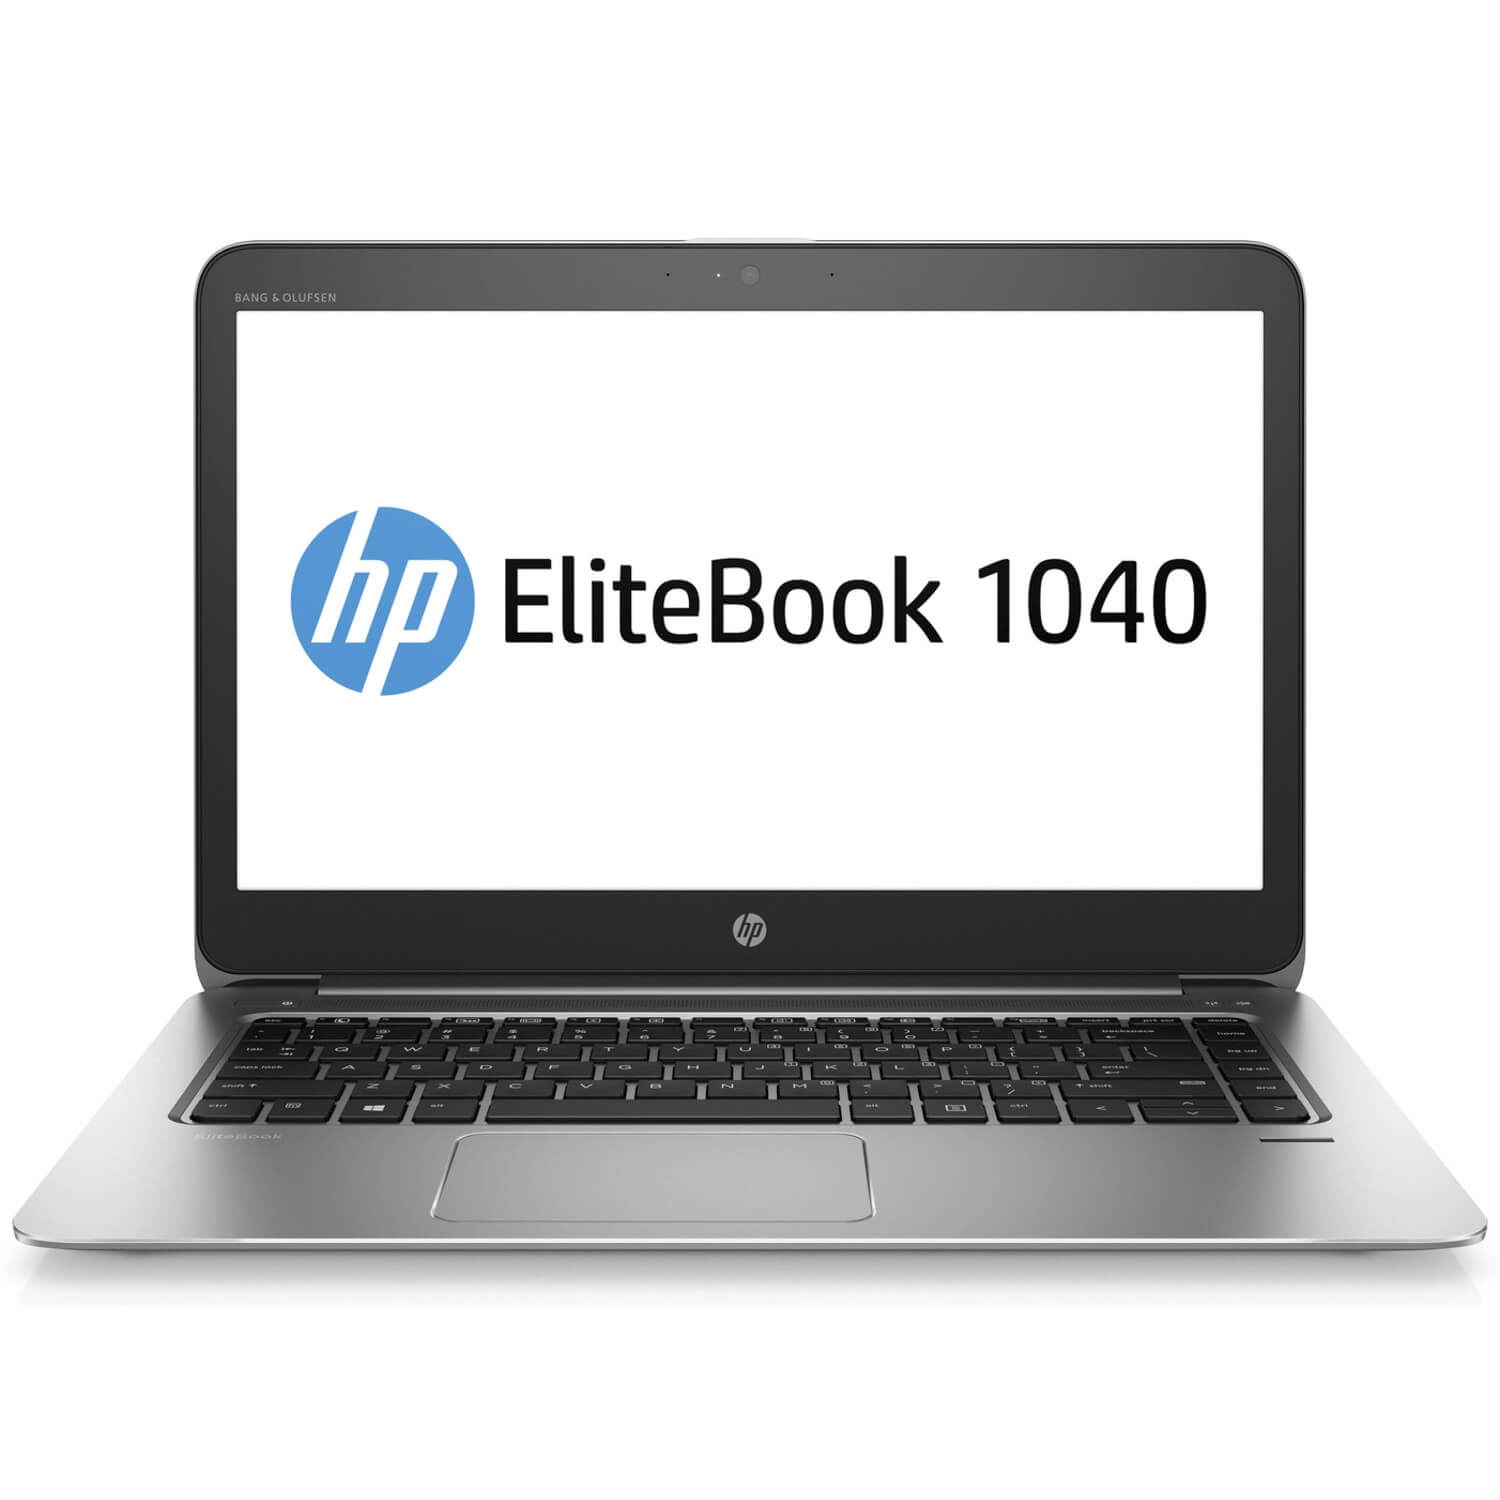  Laptop HP EliteBook 1040 G3, Intel Core i5-6200U, 8GB DDR4, SSD 256GB, Intel HD Graphics, Windows 7 Pro 